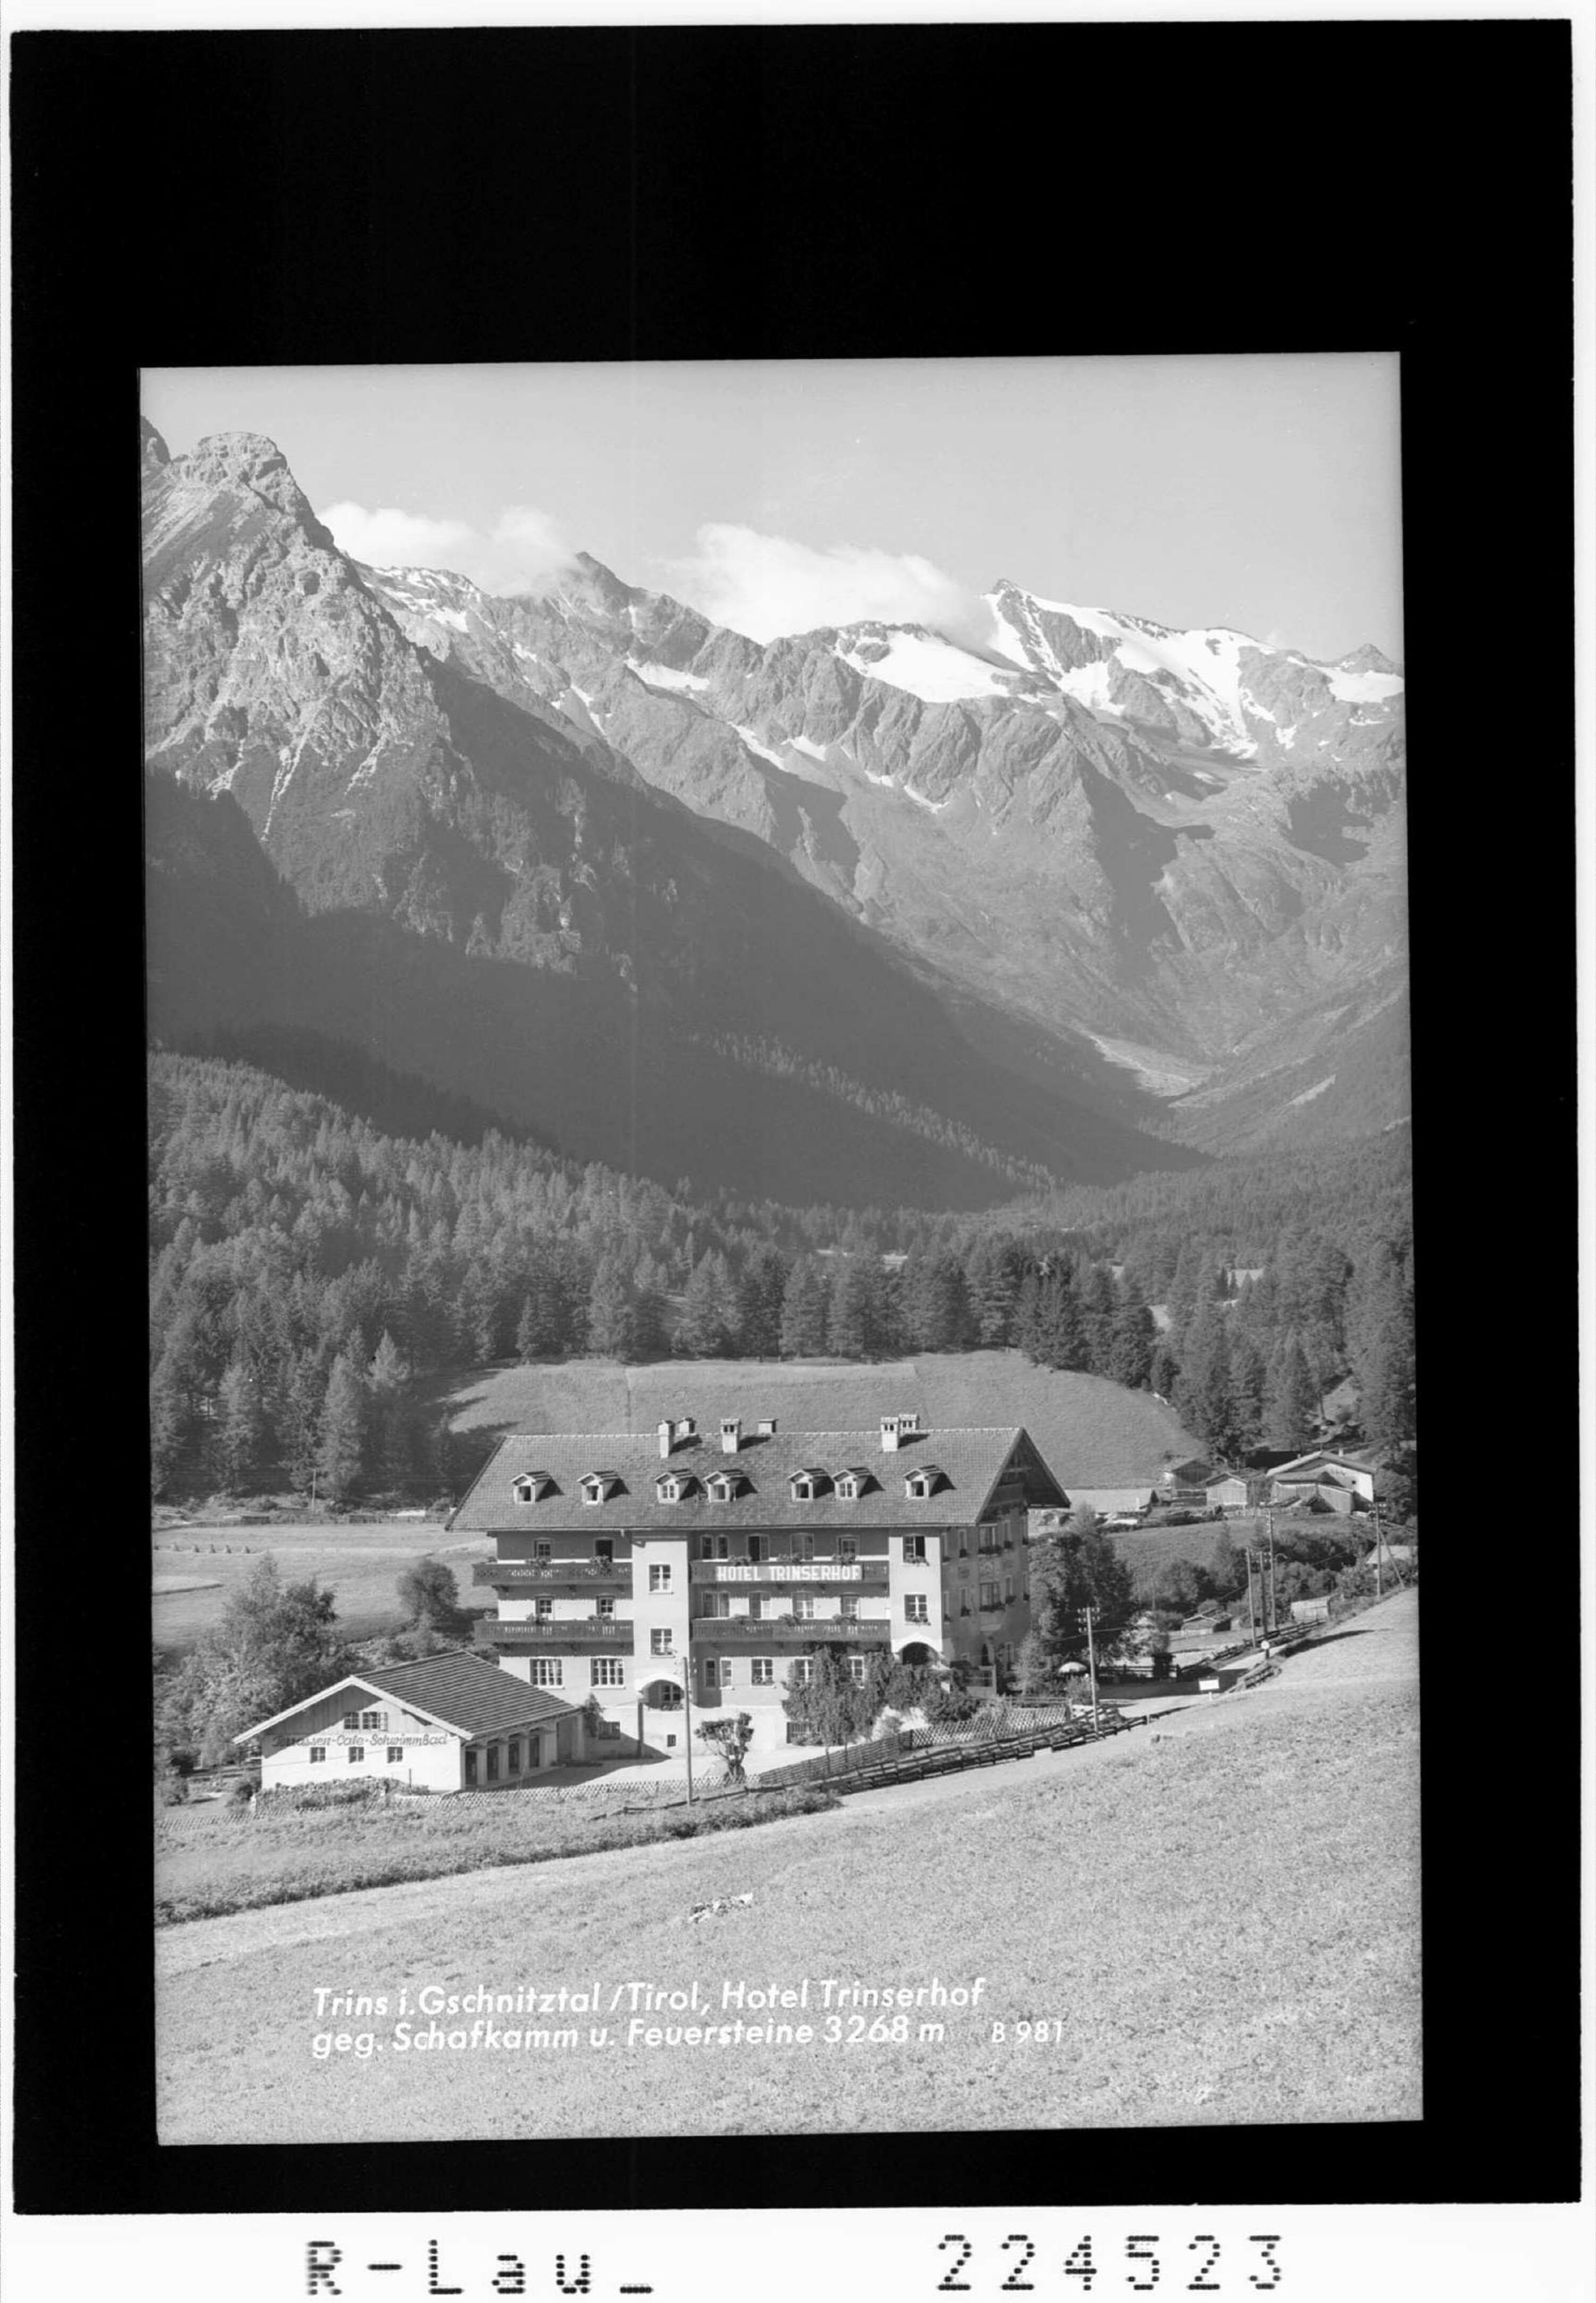 Trins im Gschnitztal / Tirol / Hotel Trinserhof gegen Schafkamm und Feuerstein 3268 m></div>


    <hr>
    <div class=